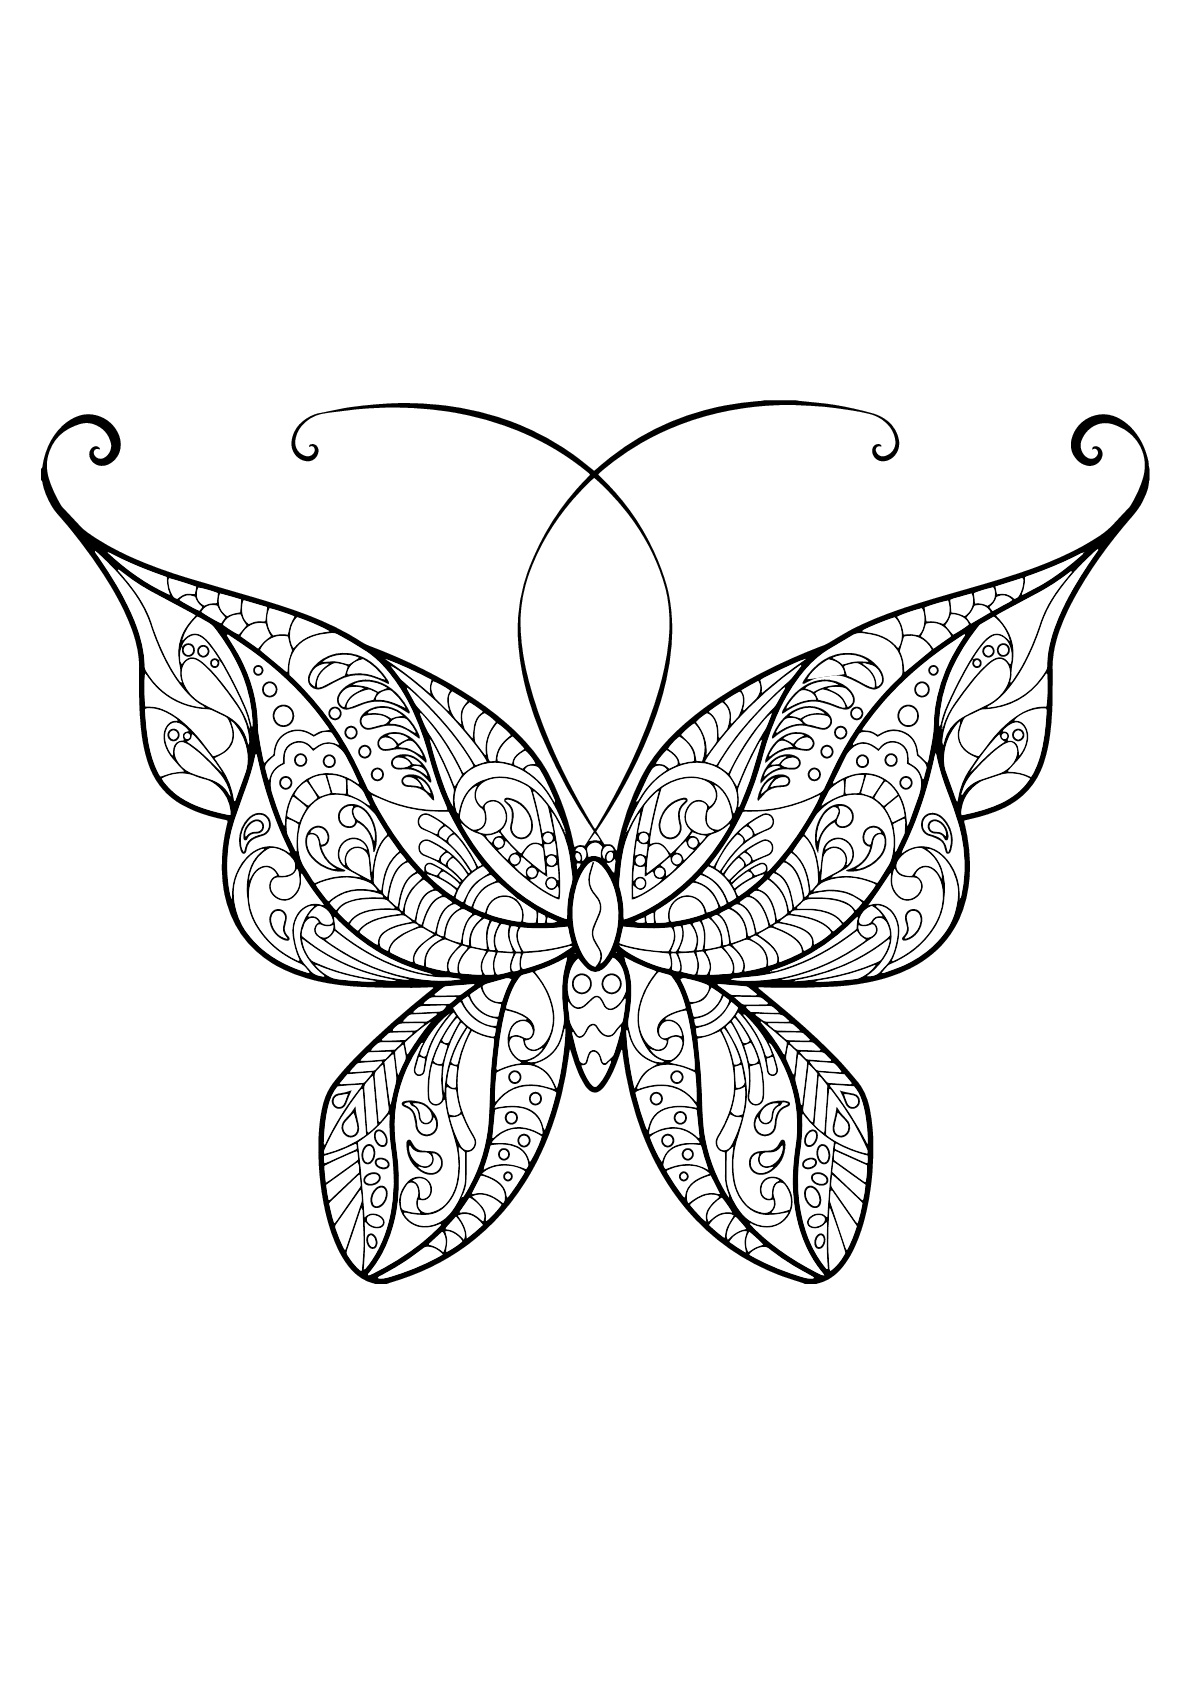 Mariposa con bellos e intrincados dibujos - 14